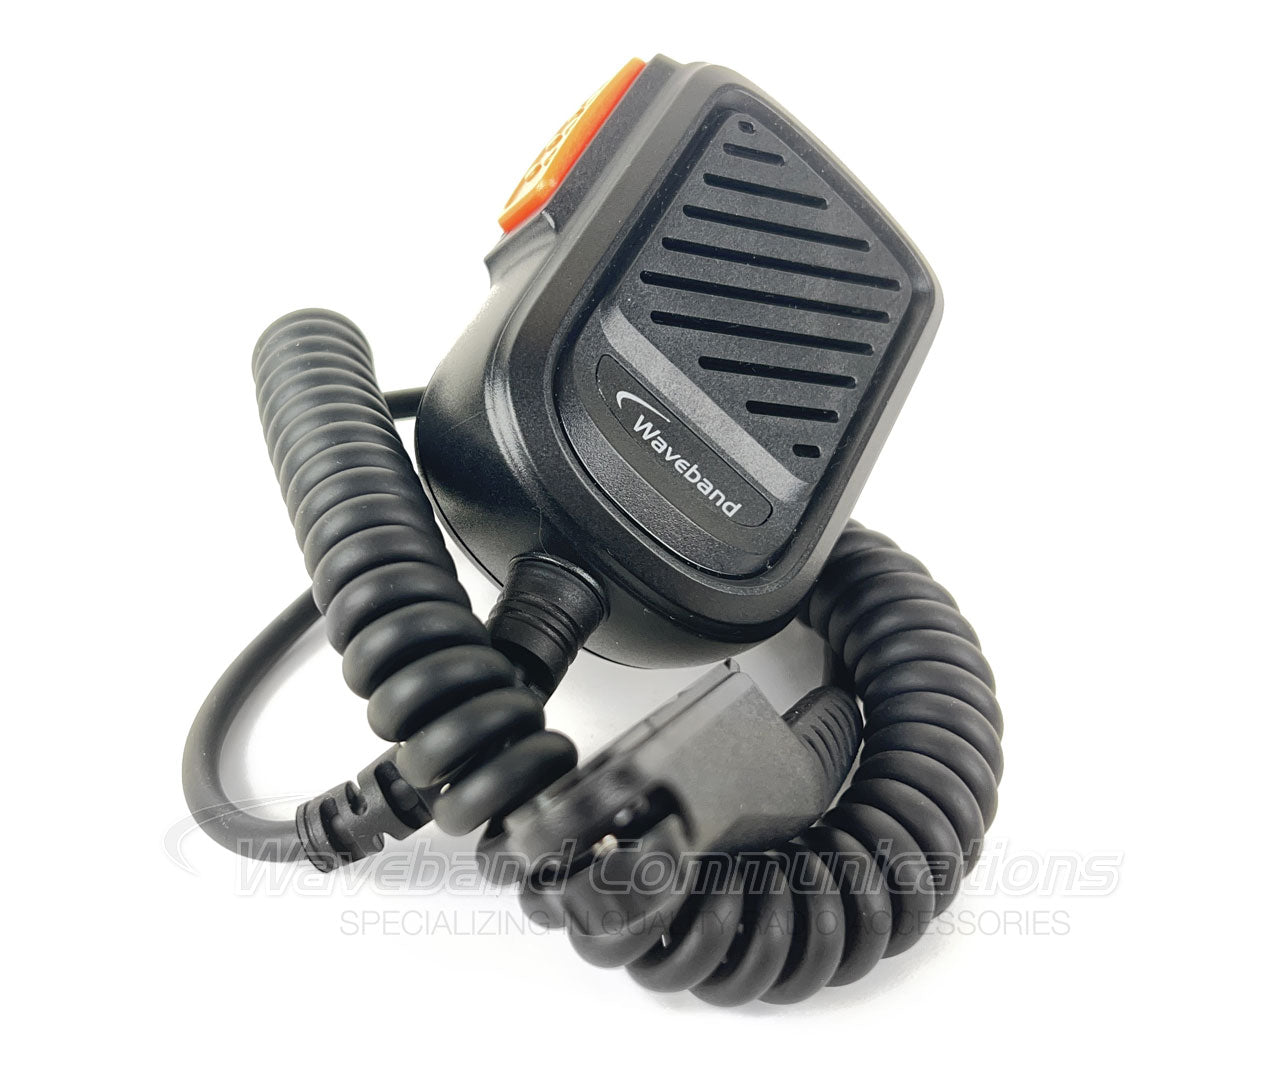 Motorola PMMN4140 Micrófono de altavoz de servicio pesado comparable para la radio Motorola R7